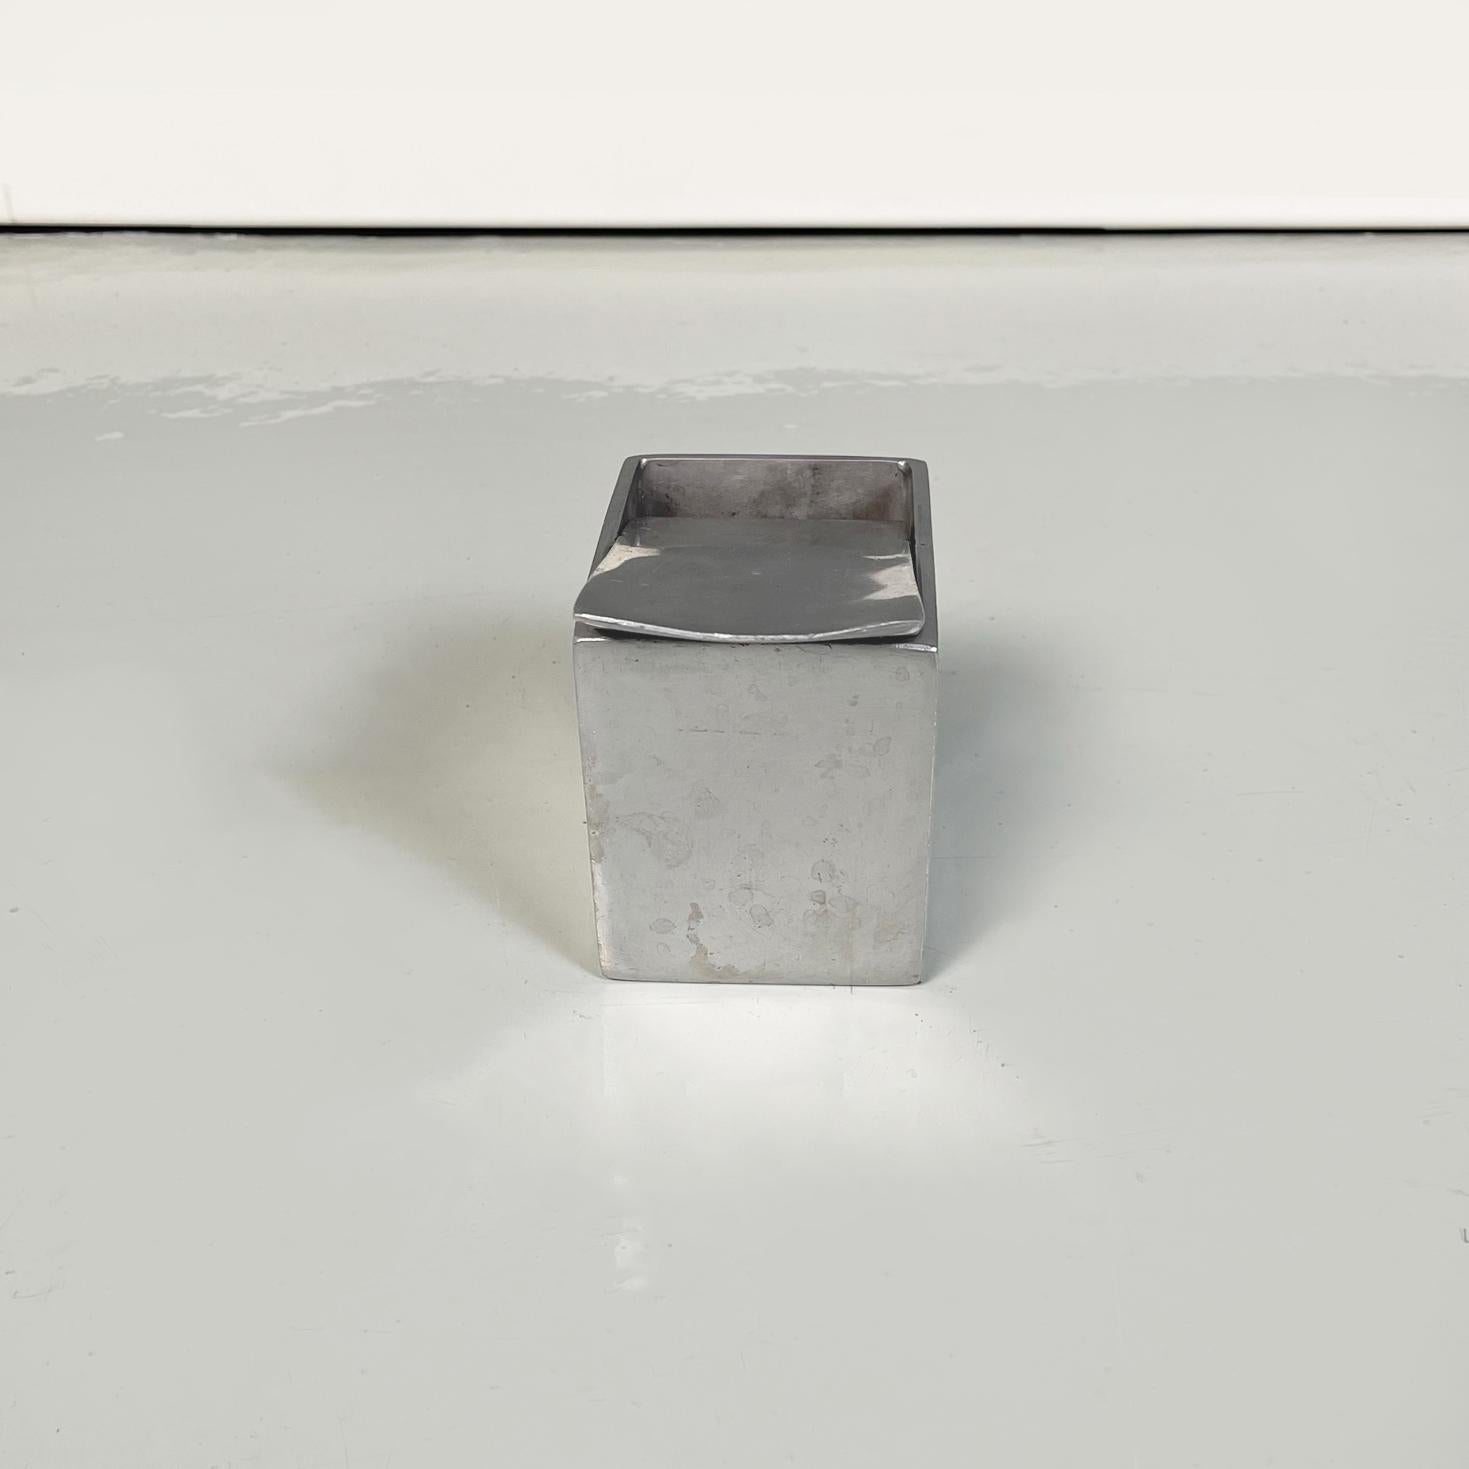 mcdonald's aluminum ashtray